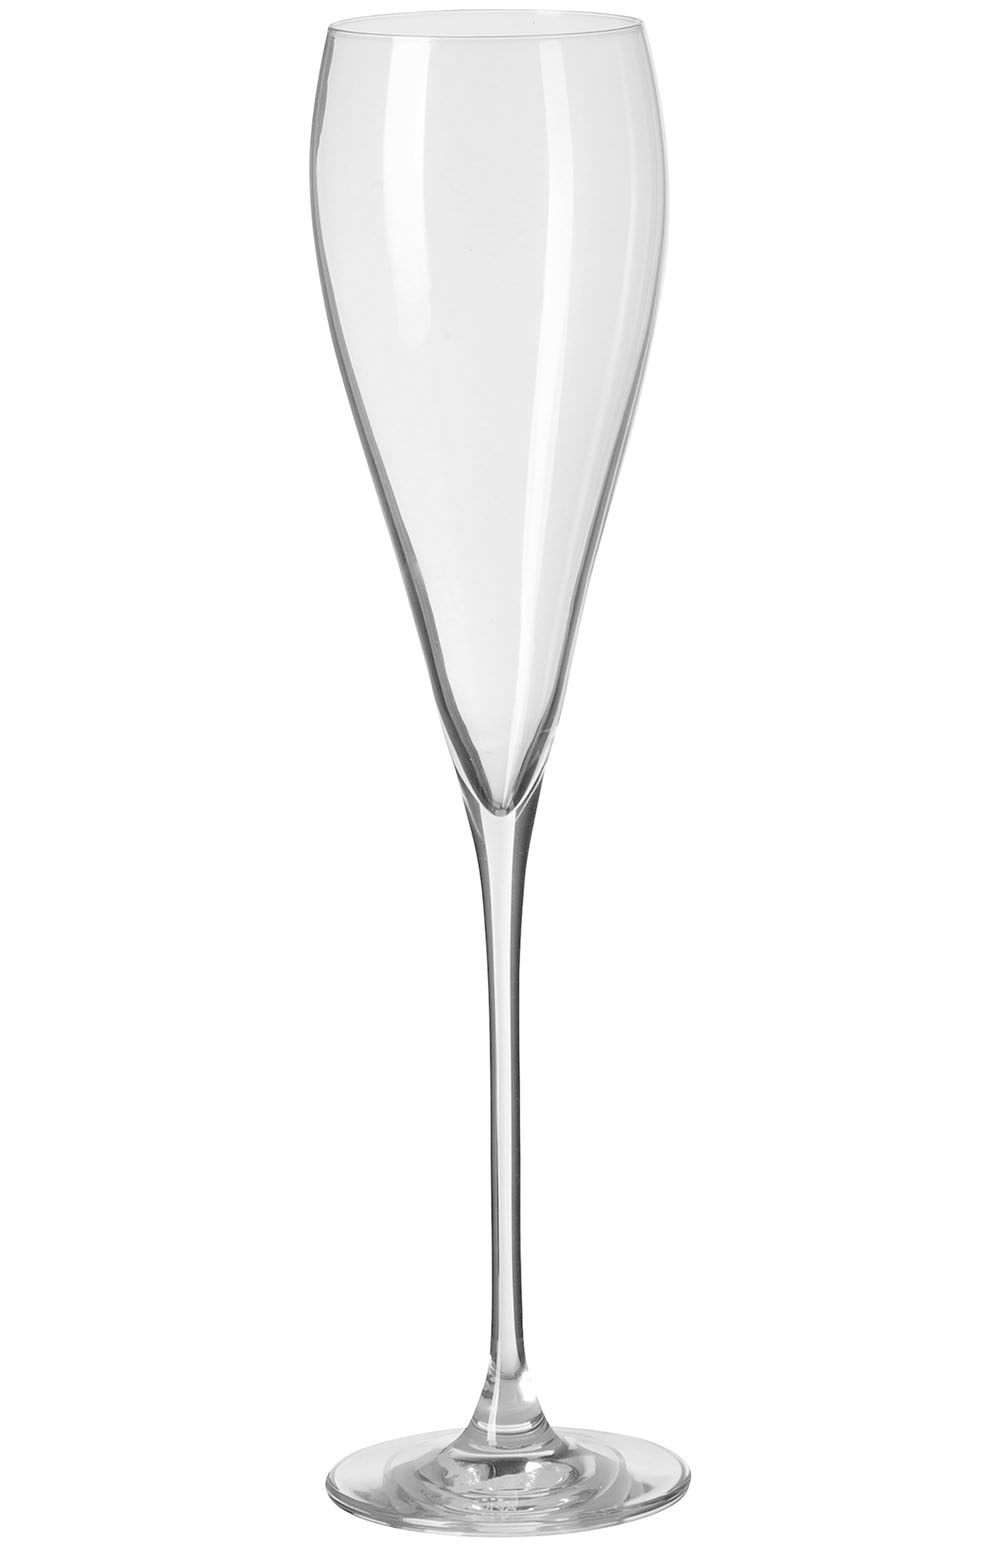 Fink Champagnerglas »PREMIO«, (Set, 4 tlg.), Sektglas, Champagnerflöte, 4er Set, transparent